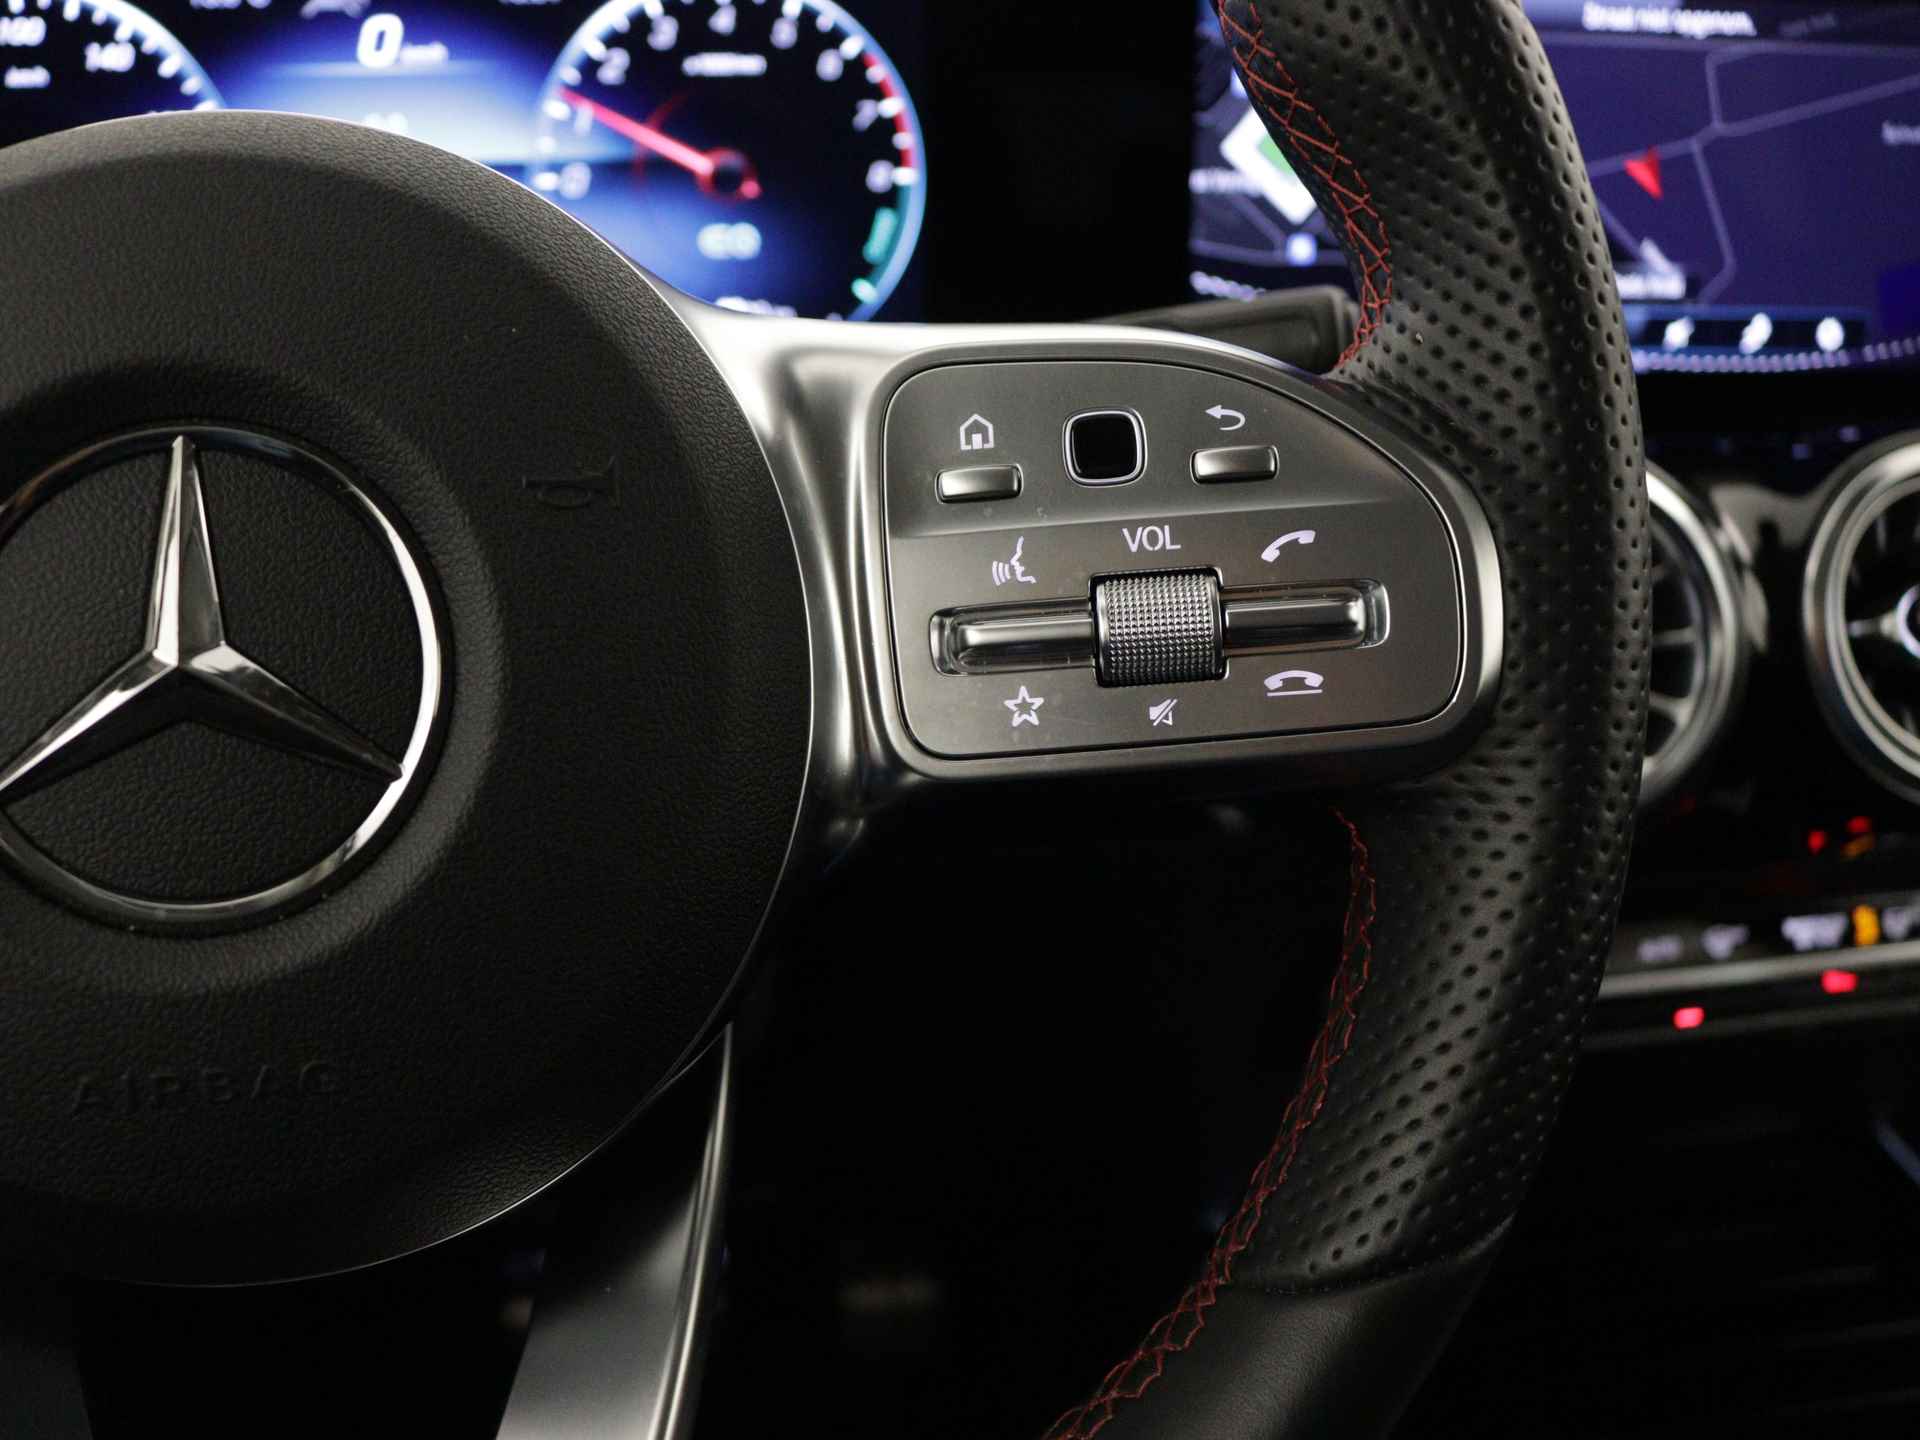 Mercedes-Benz B-Klasse 250 e AMG Line Limited Multispaaks lichtmetalen velgen | MBUX wide screen | Navigatie | Parking support | Inclusief 24 maanden Mercedes-Benz Certified garantie voor Europa. | - 23/45